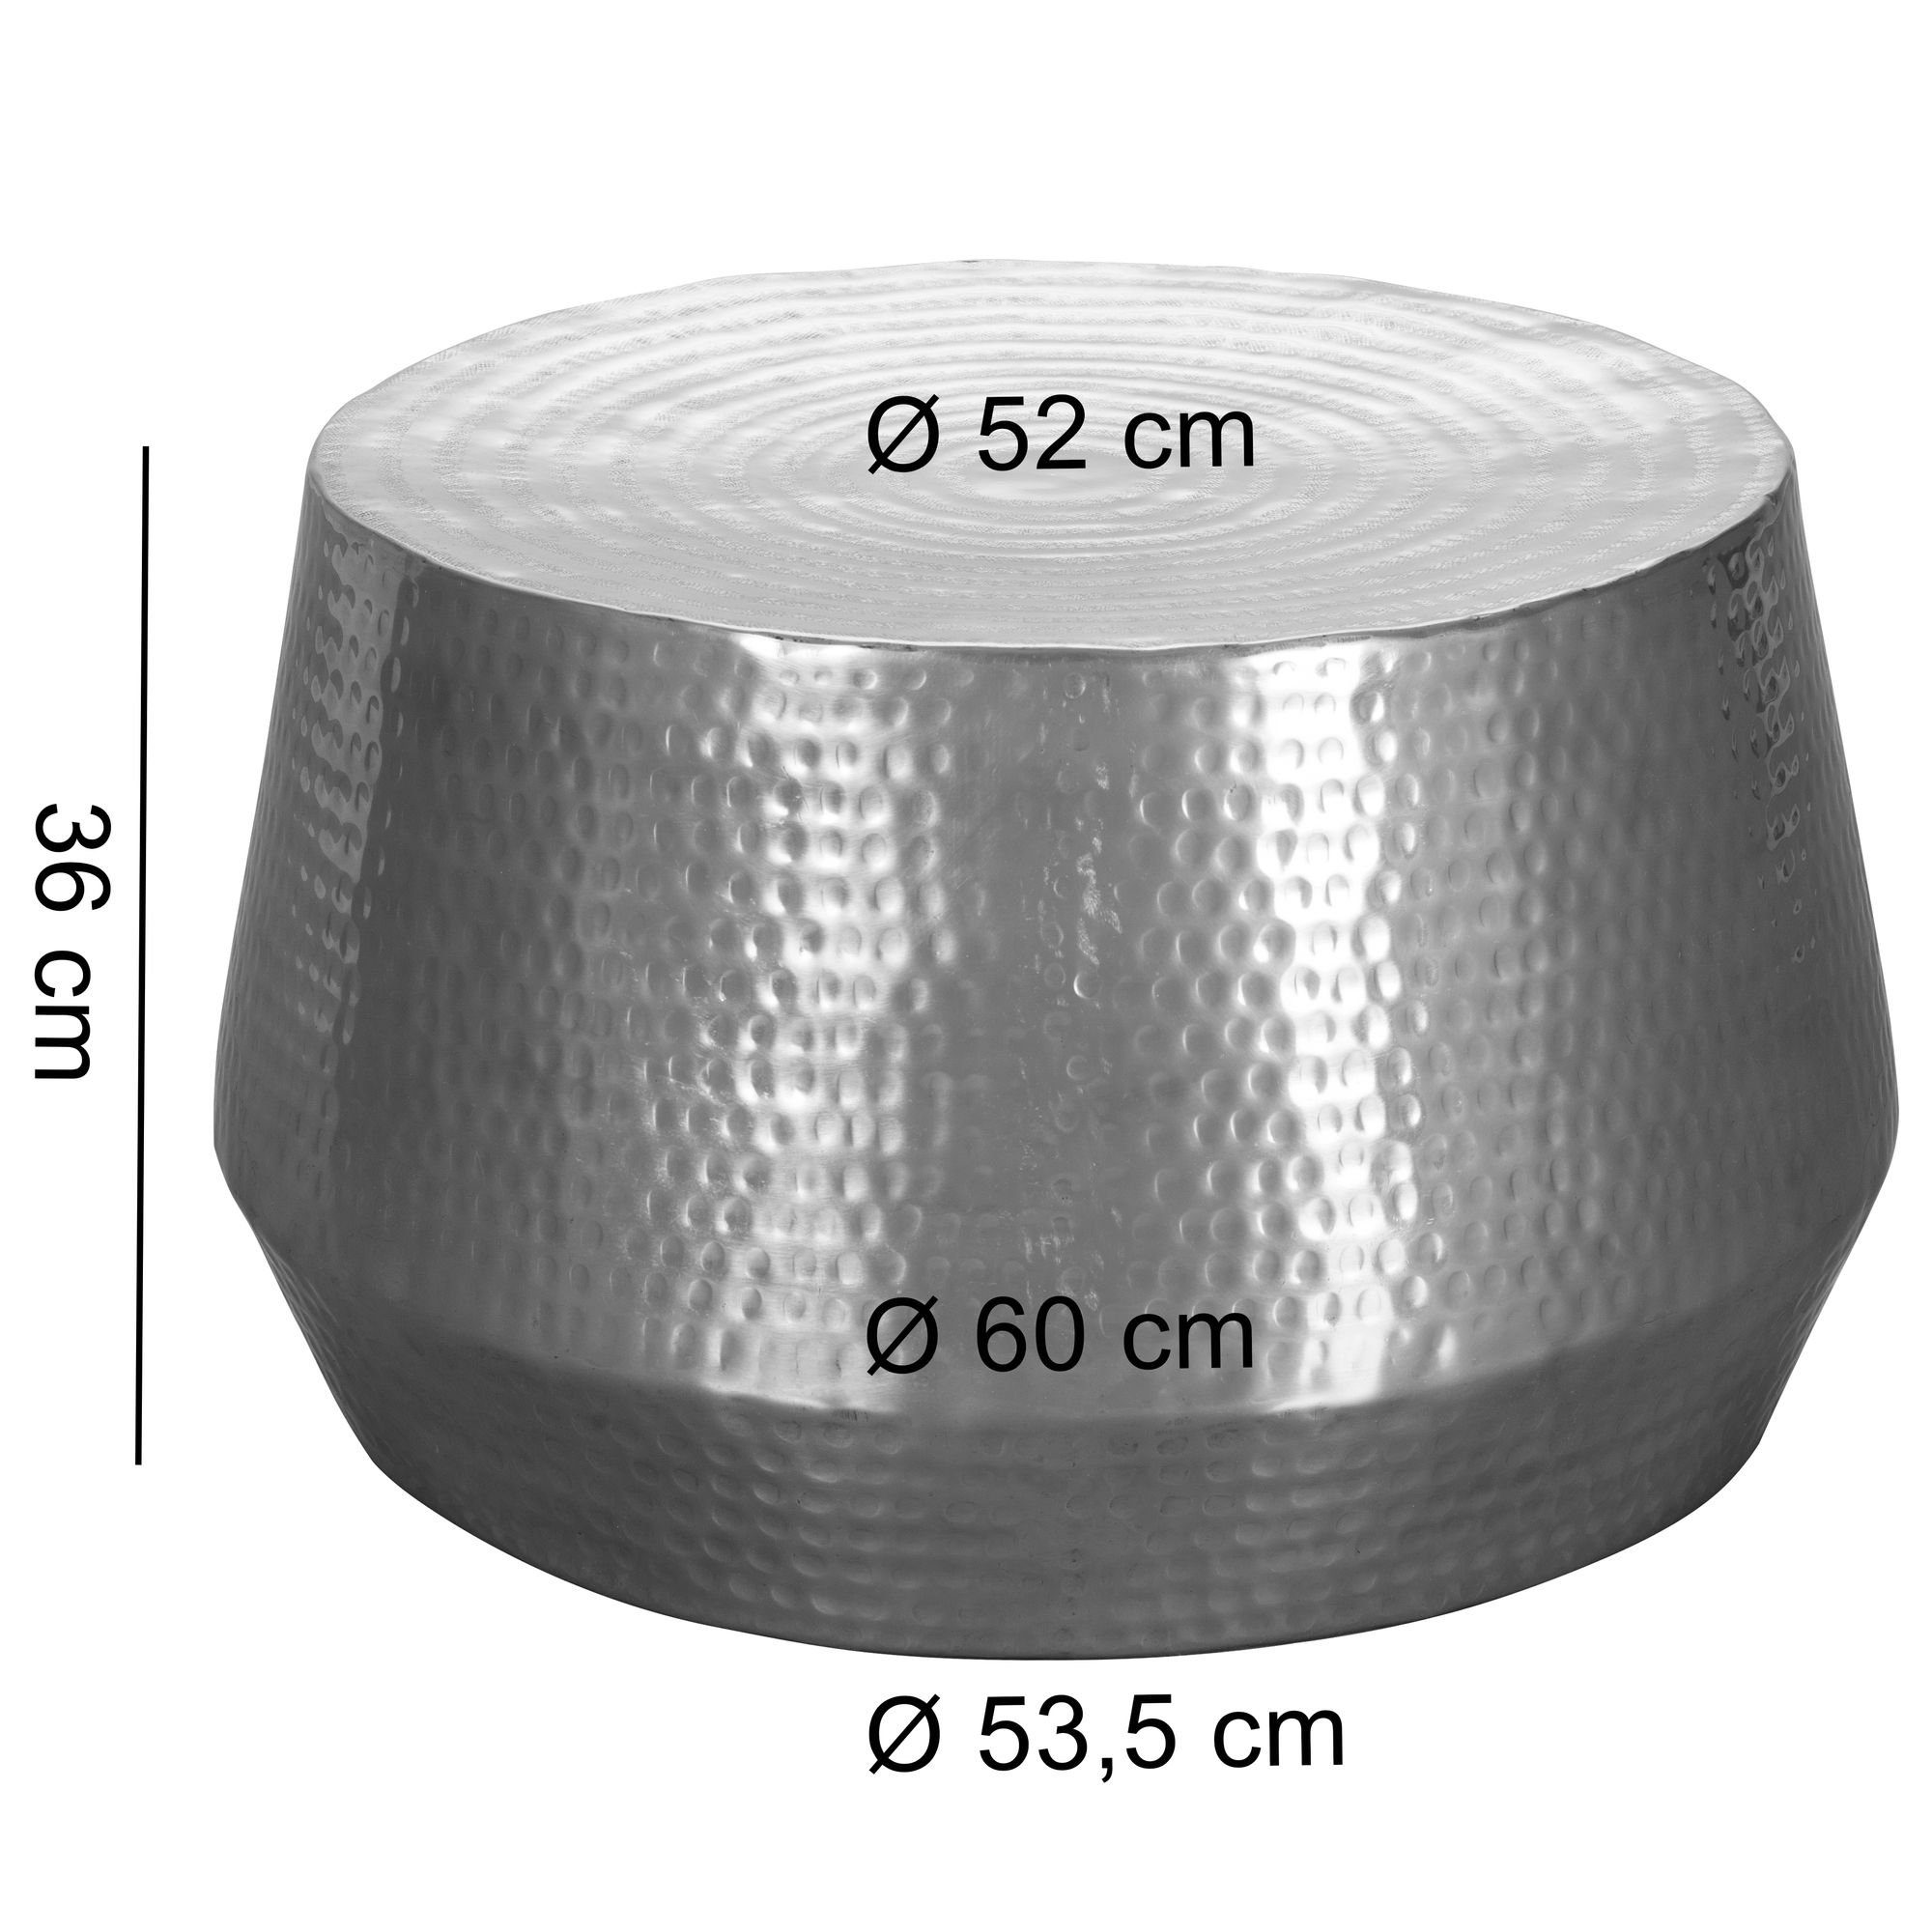 Wohnling Couchtisch WL5.493 Aluminium Orientalisch cm (60x36x60 Hammerschlag Wohnzimmertisch, Kleiner Sofatisch Rund), Silber